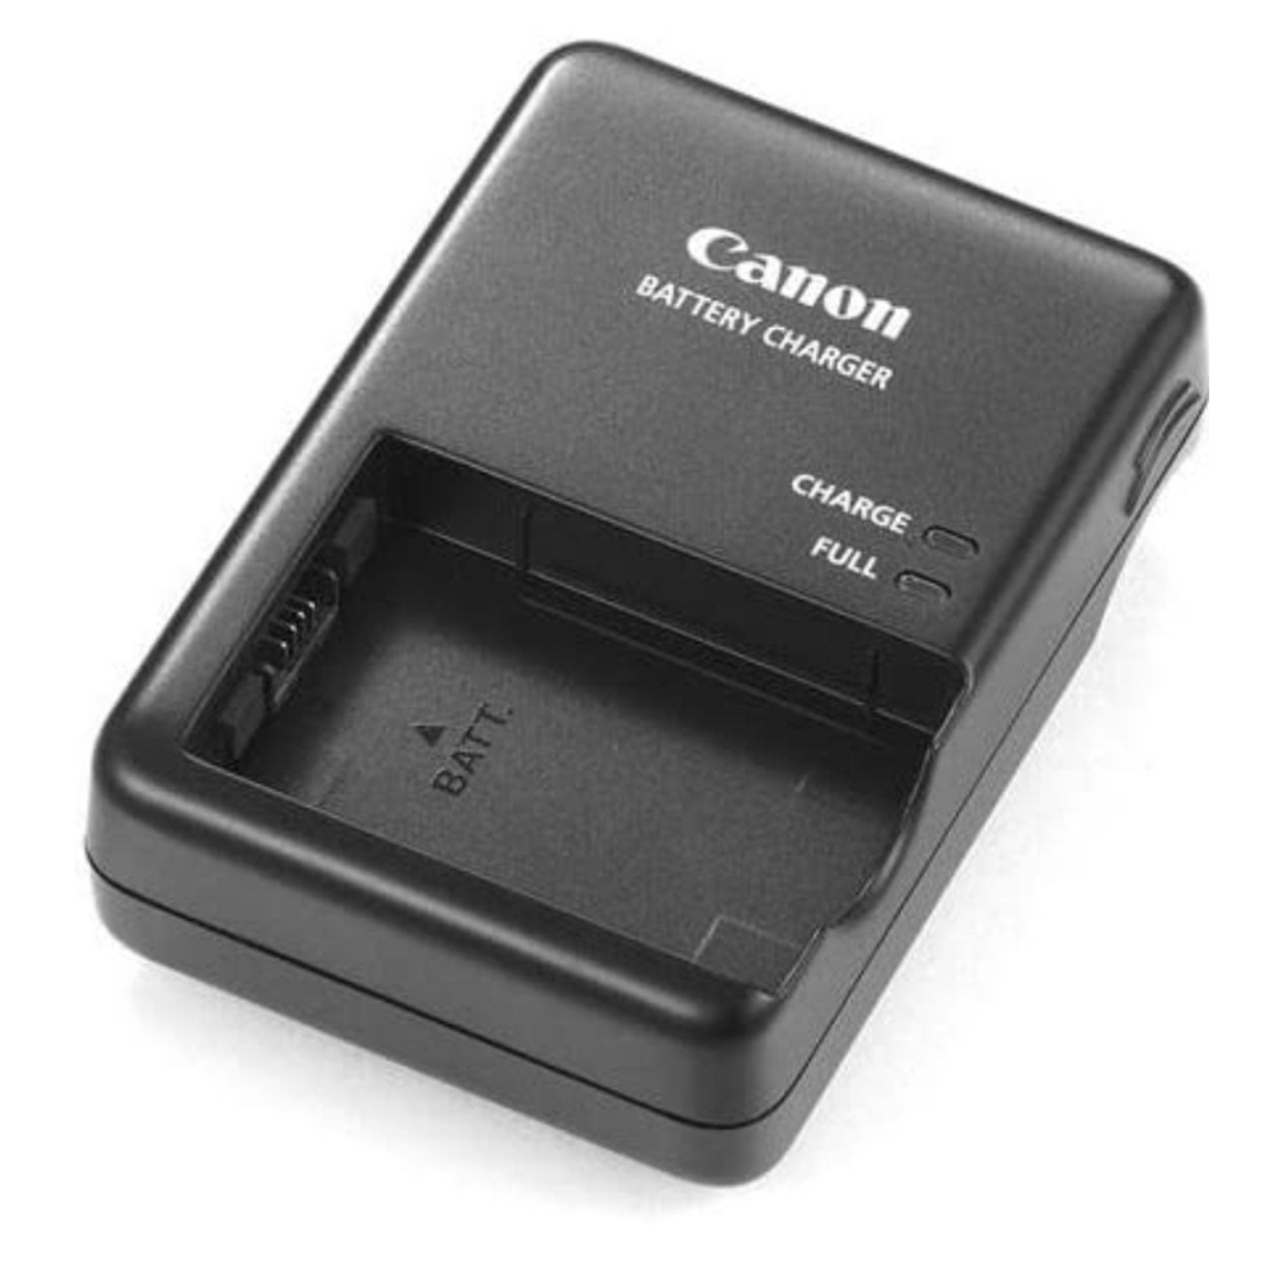 Canon device